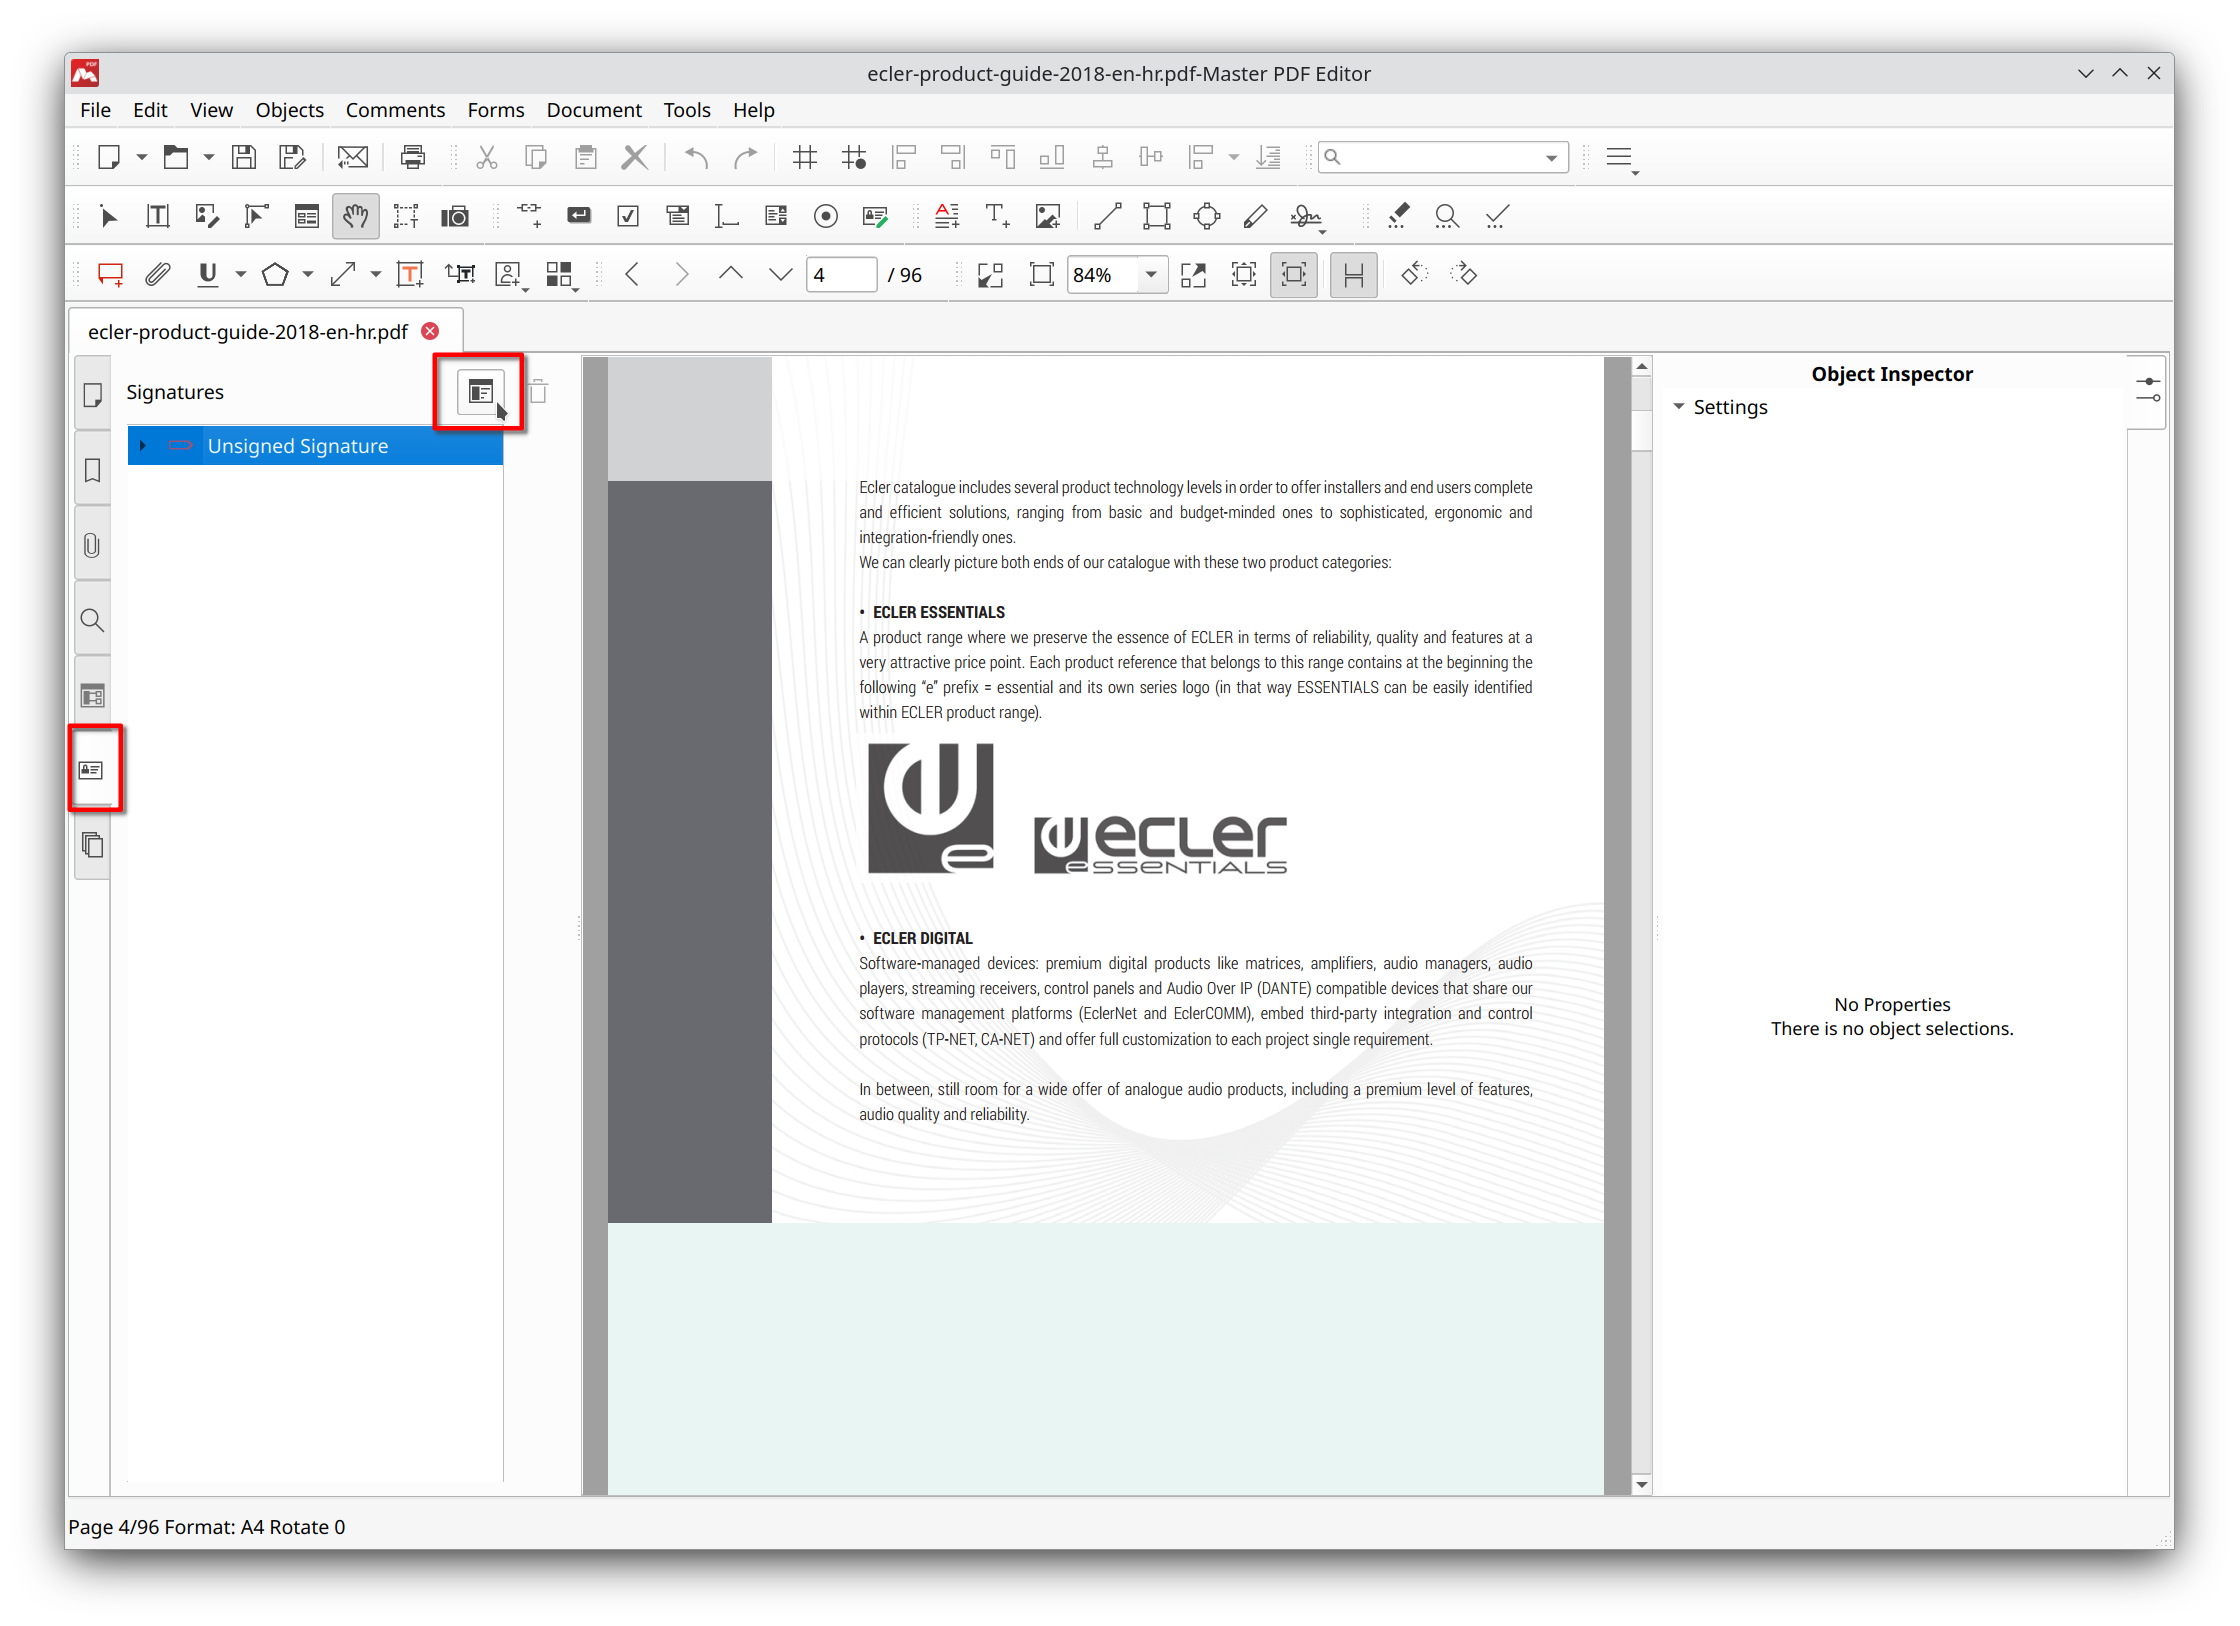 Signatures tab in Master PDF Editor